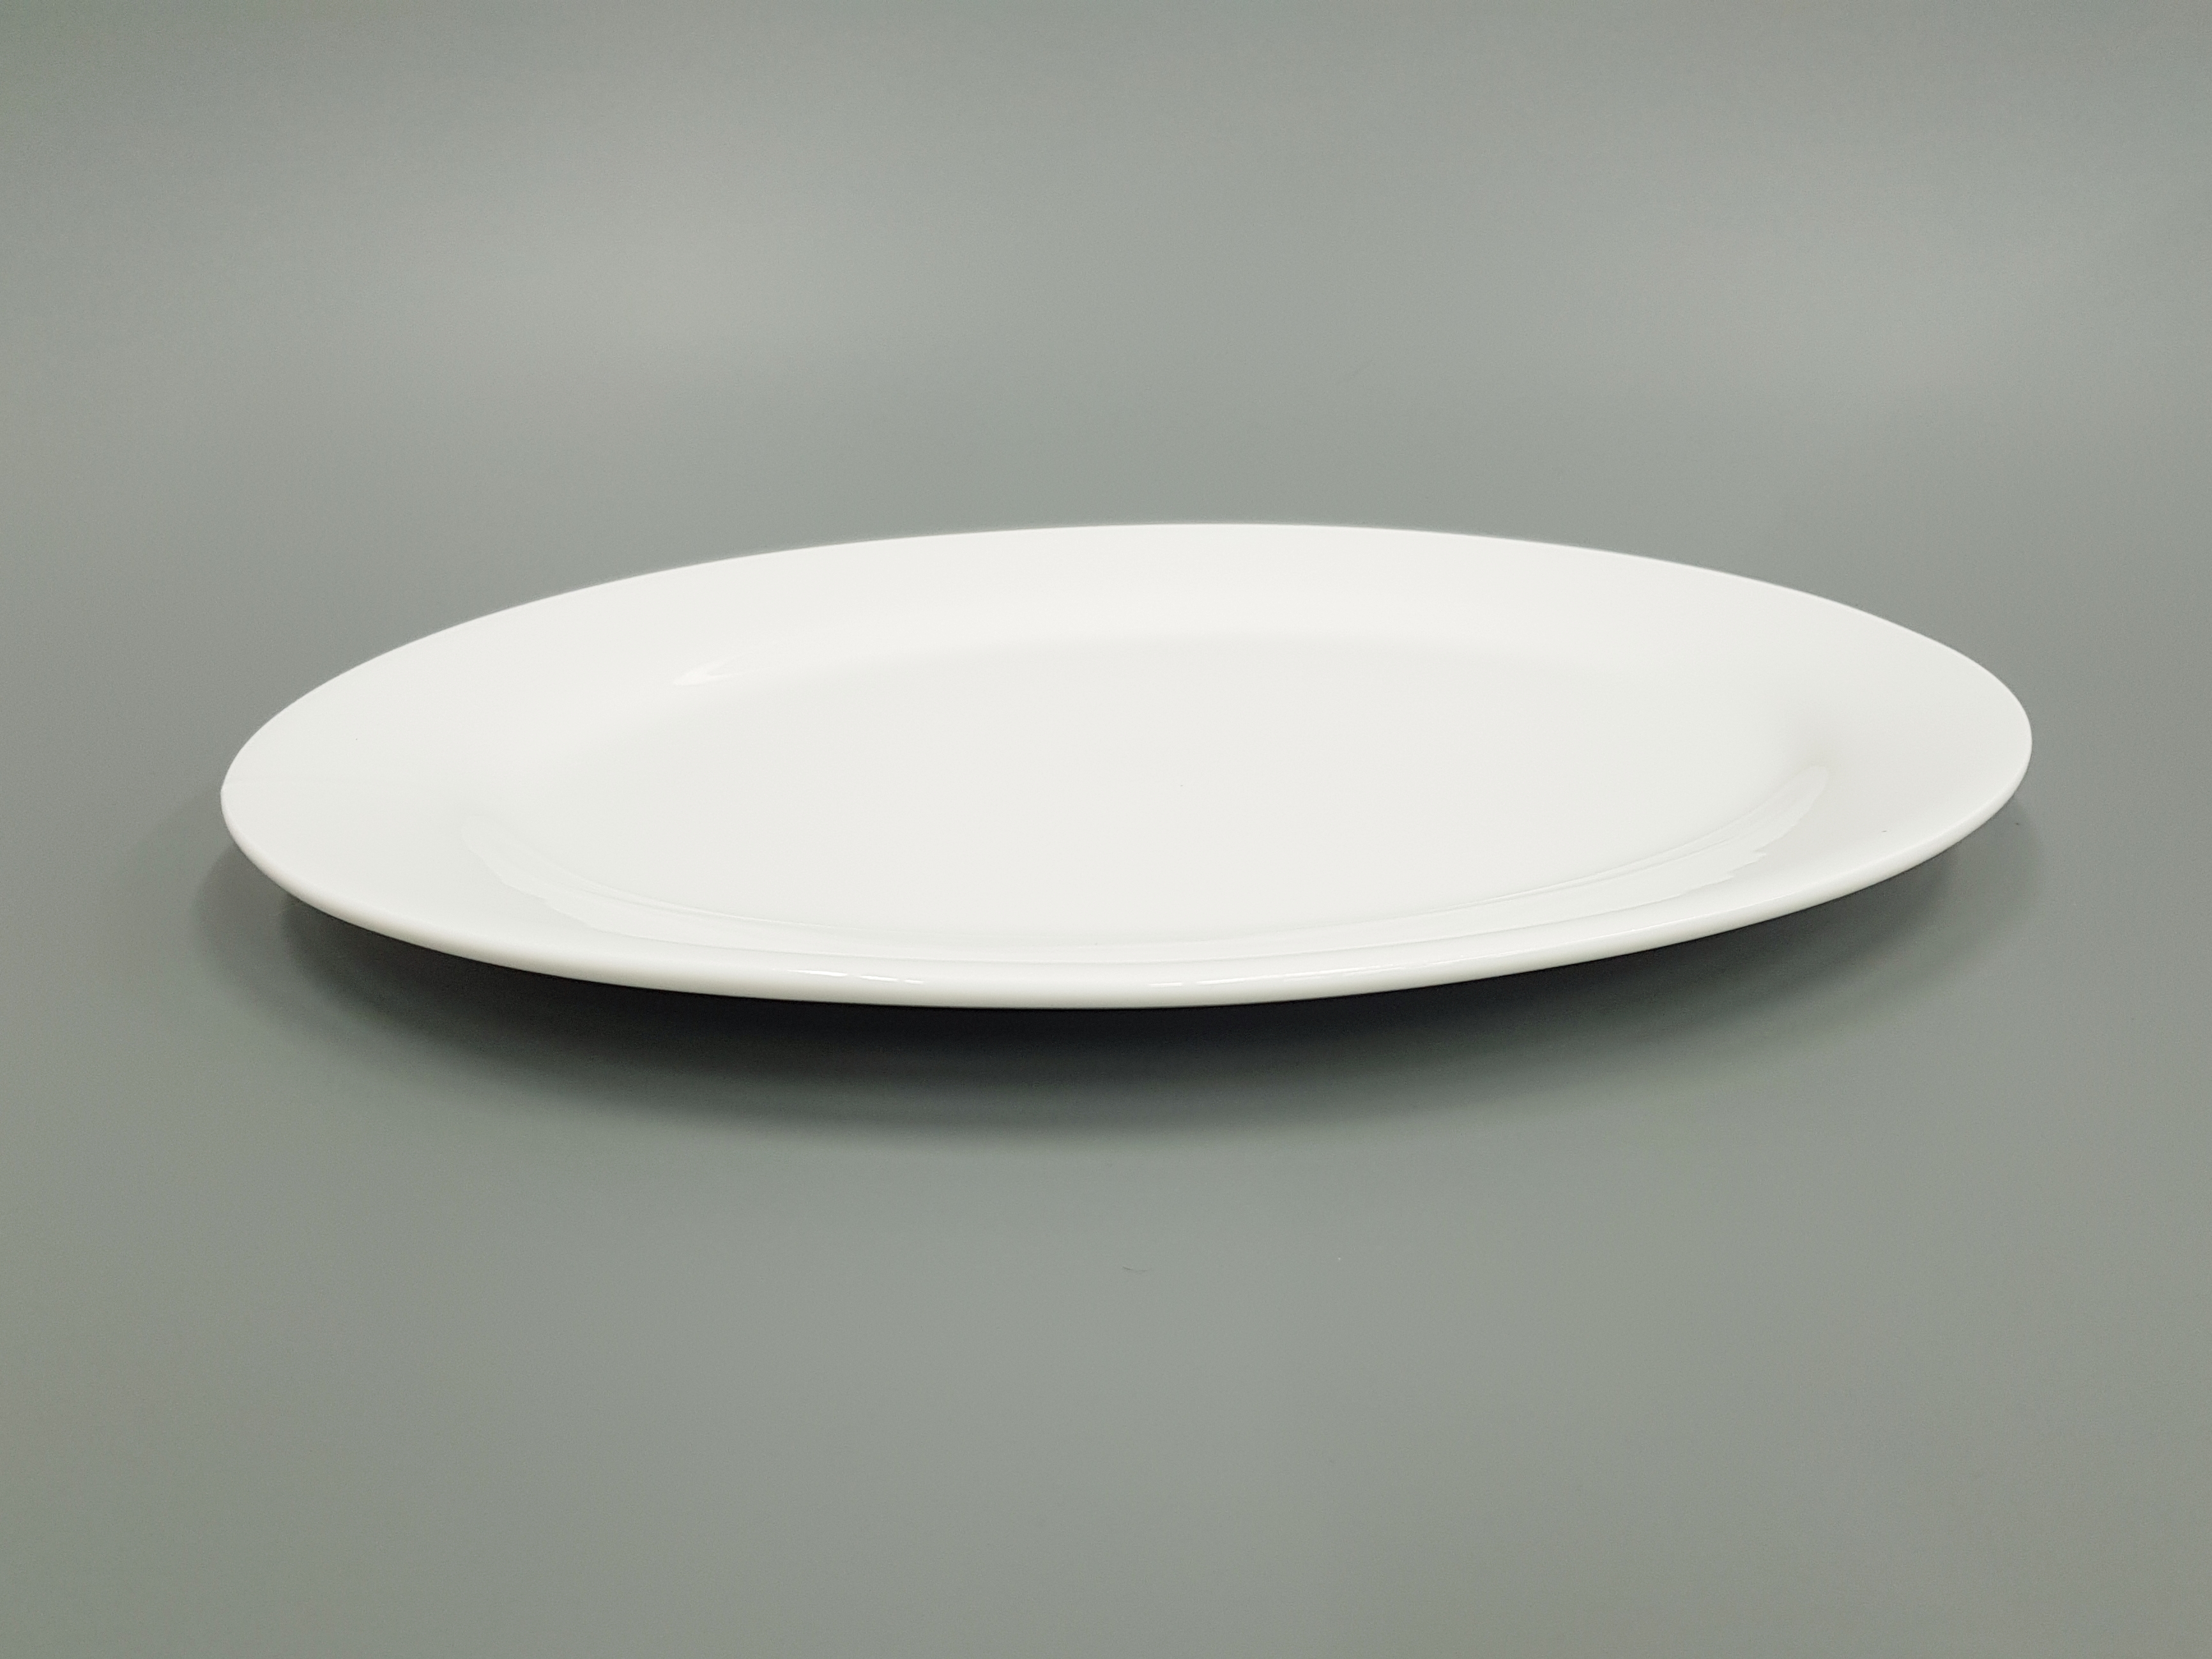 Тарелка длинная. Arc intensity тарелка овальная g4975. Тарелка овальная серая TM-22st0809082. WL-991005/А тарелка десертная «классика», 18 см. Тарелка для вторых блюд "Чезаре" с155.